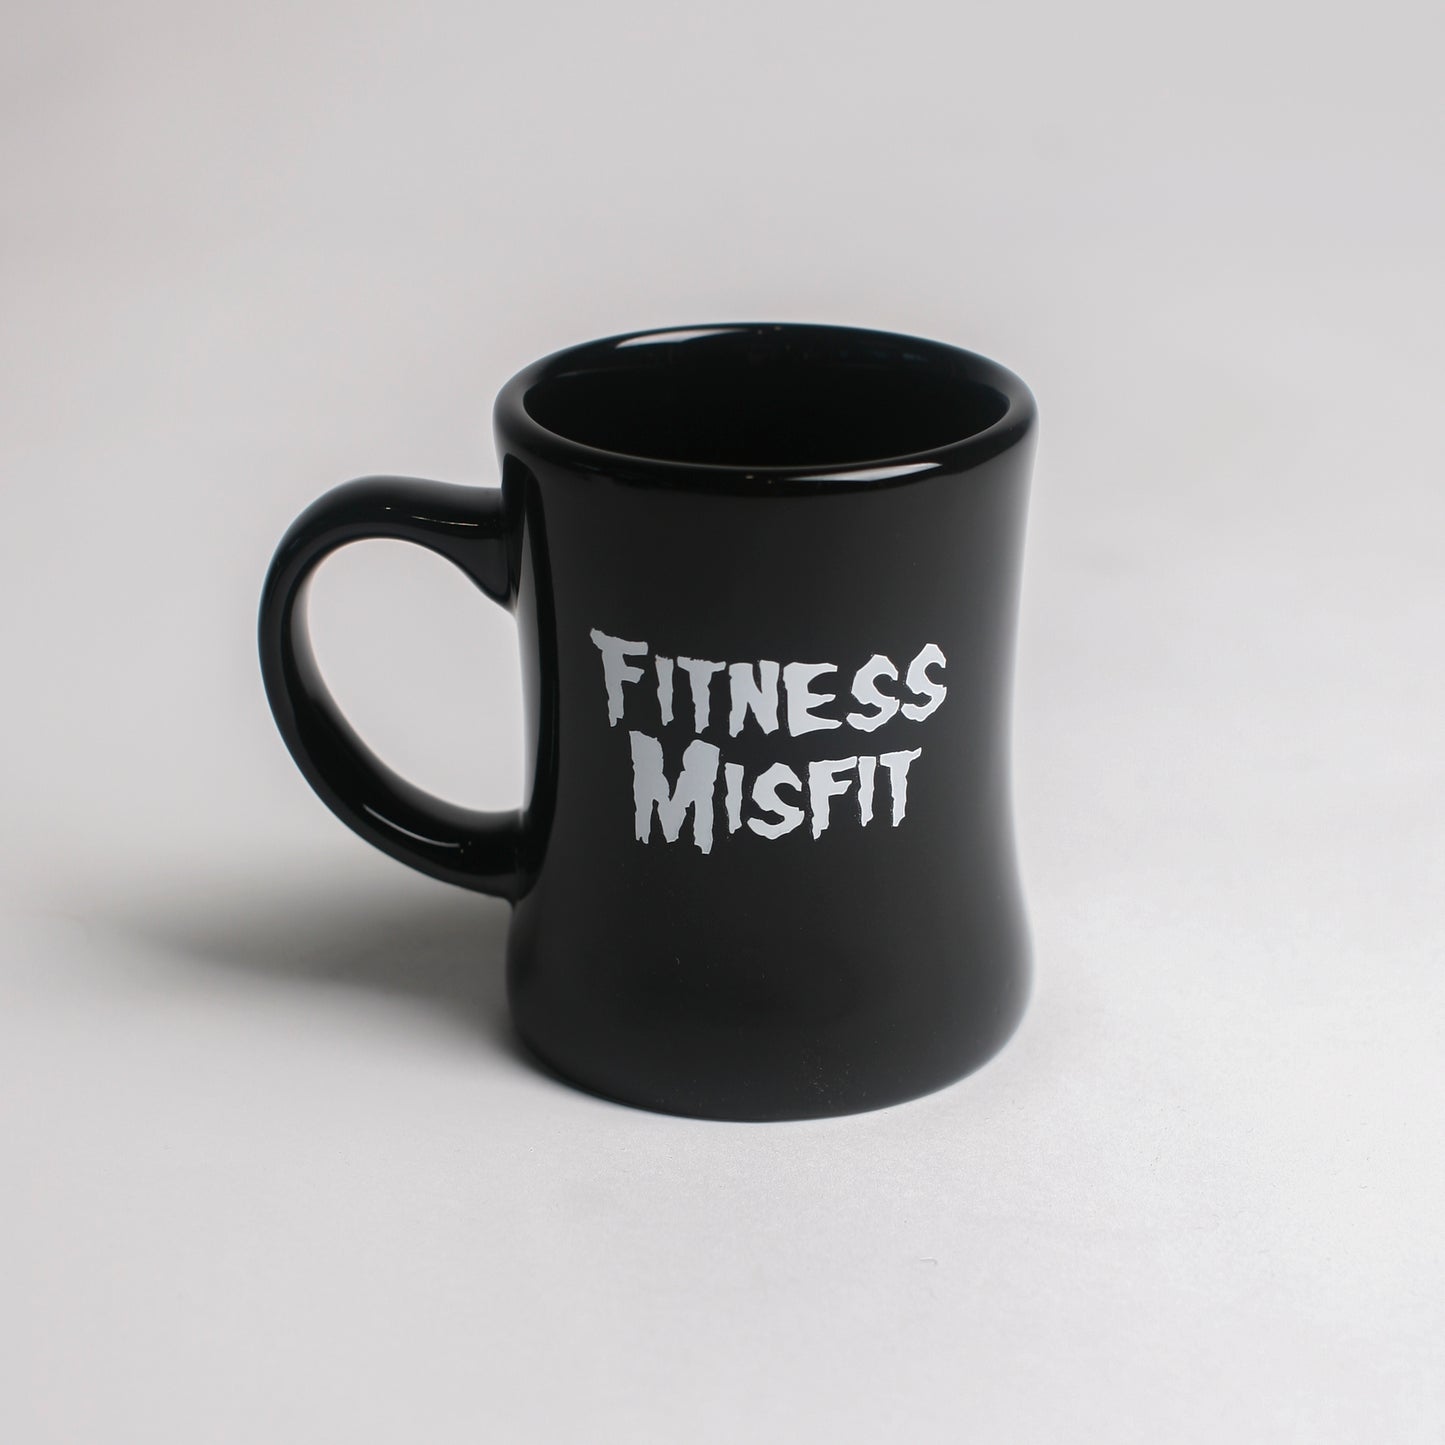 Fitness Misfit Coffee Mug // Black